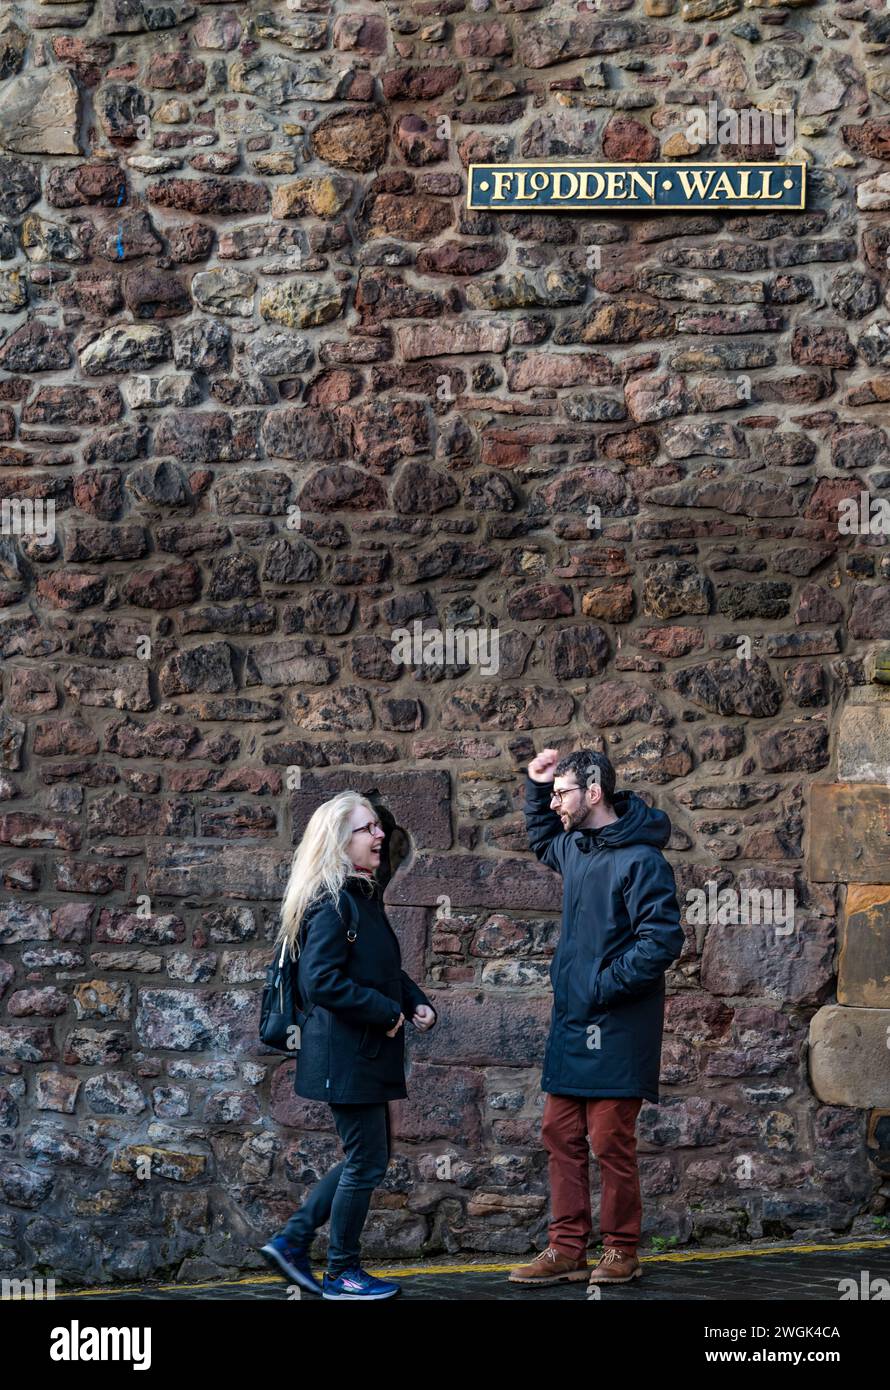 Ein Paar an der mittelalterlichen alten Stadtmauer, Flodden Wall, Edinburgh, Schottland, Großbritannien Stockfoto